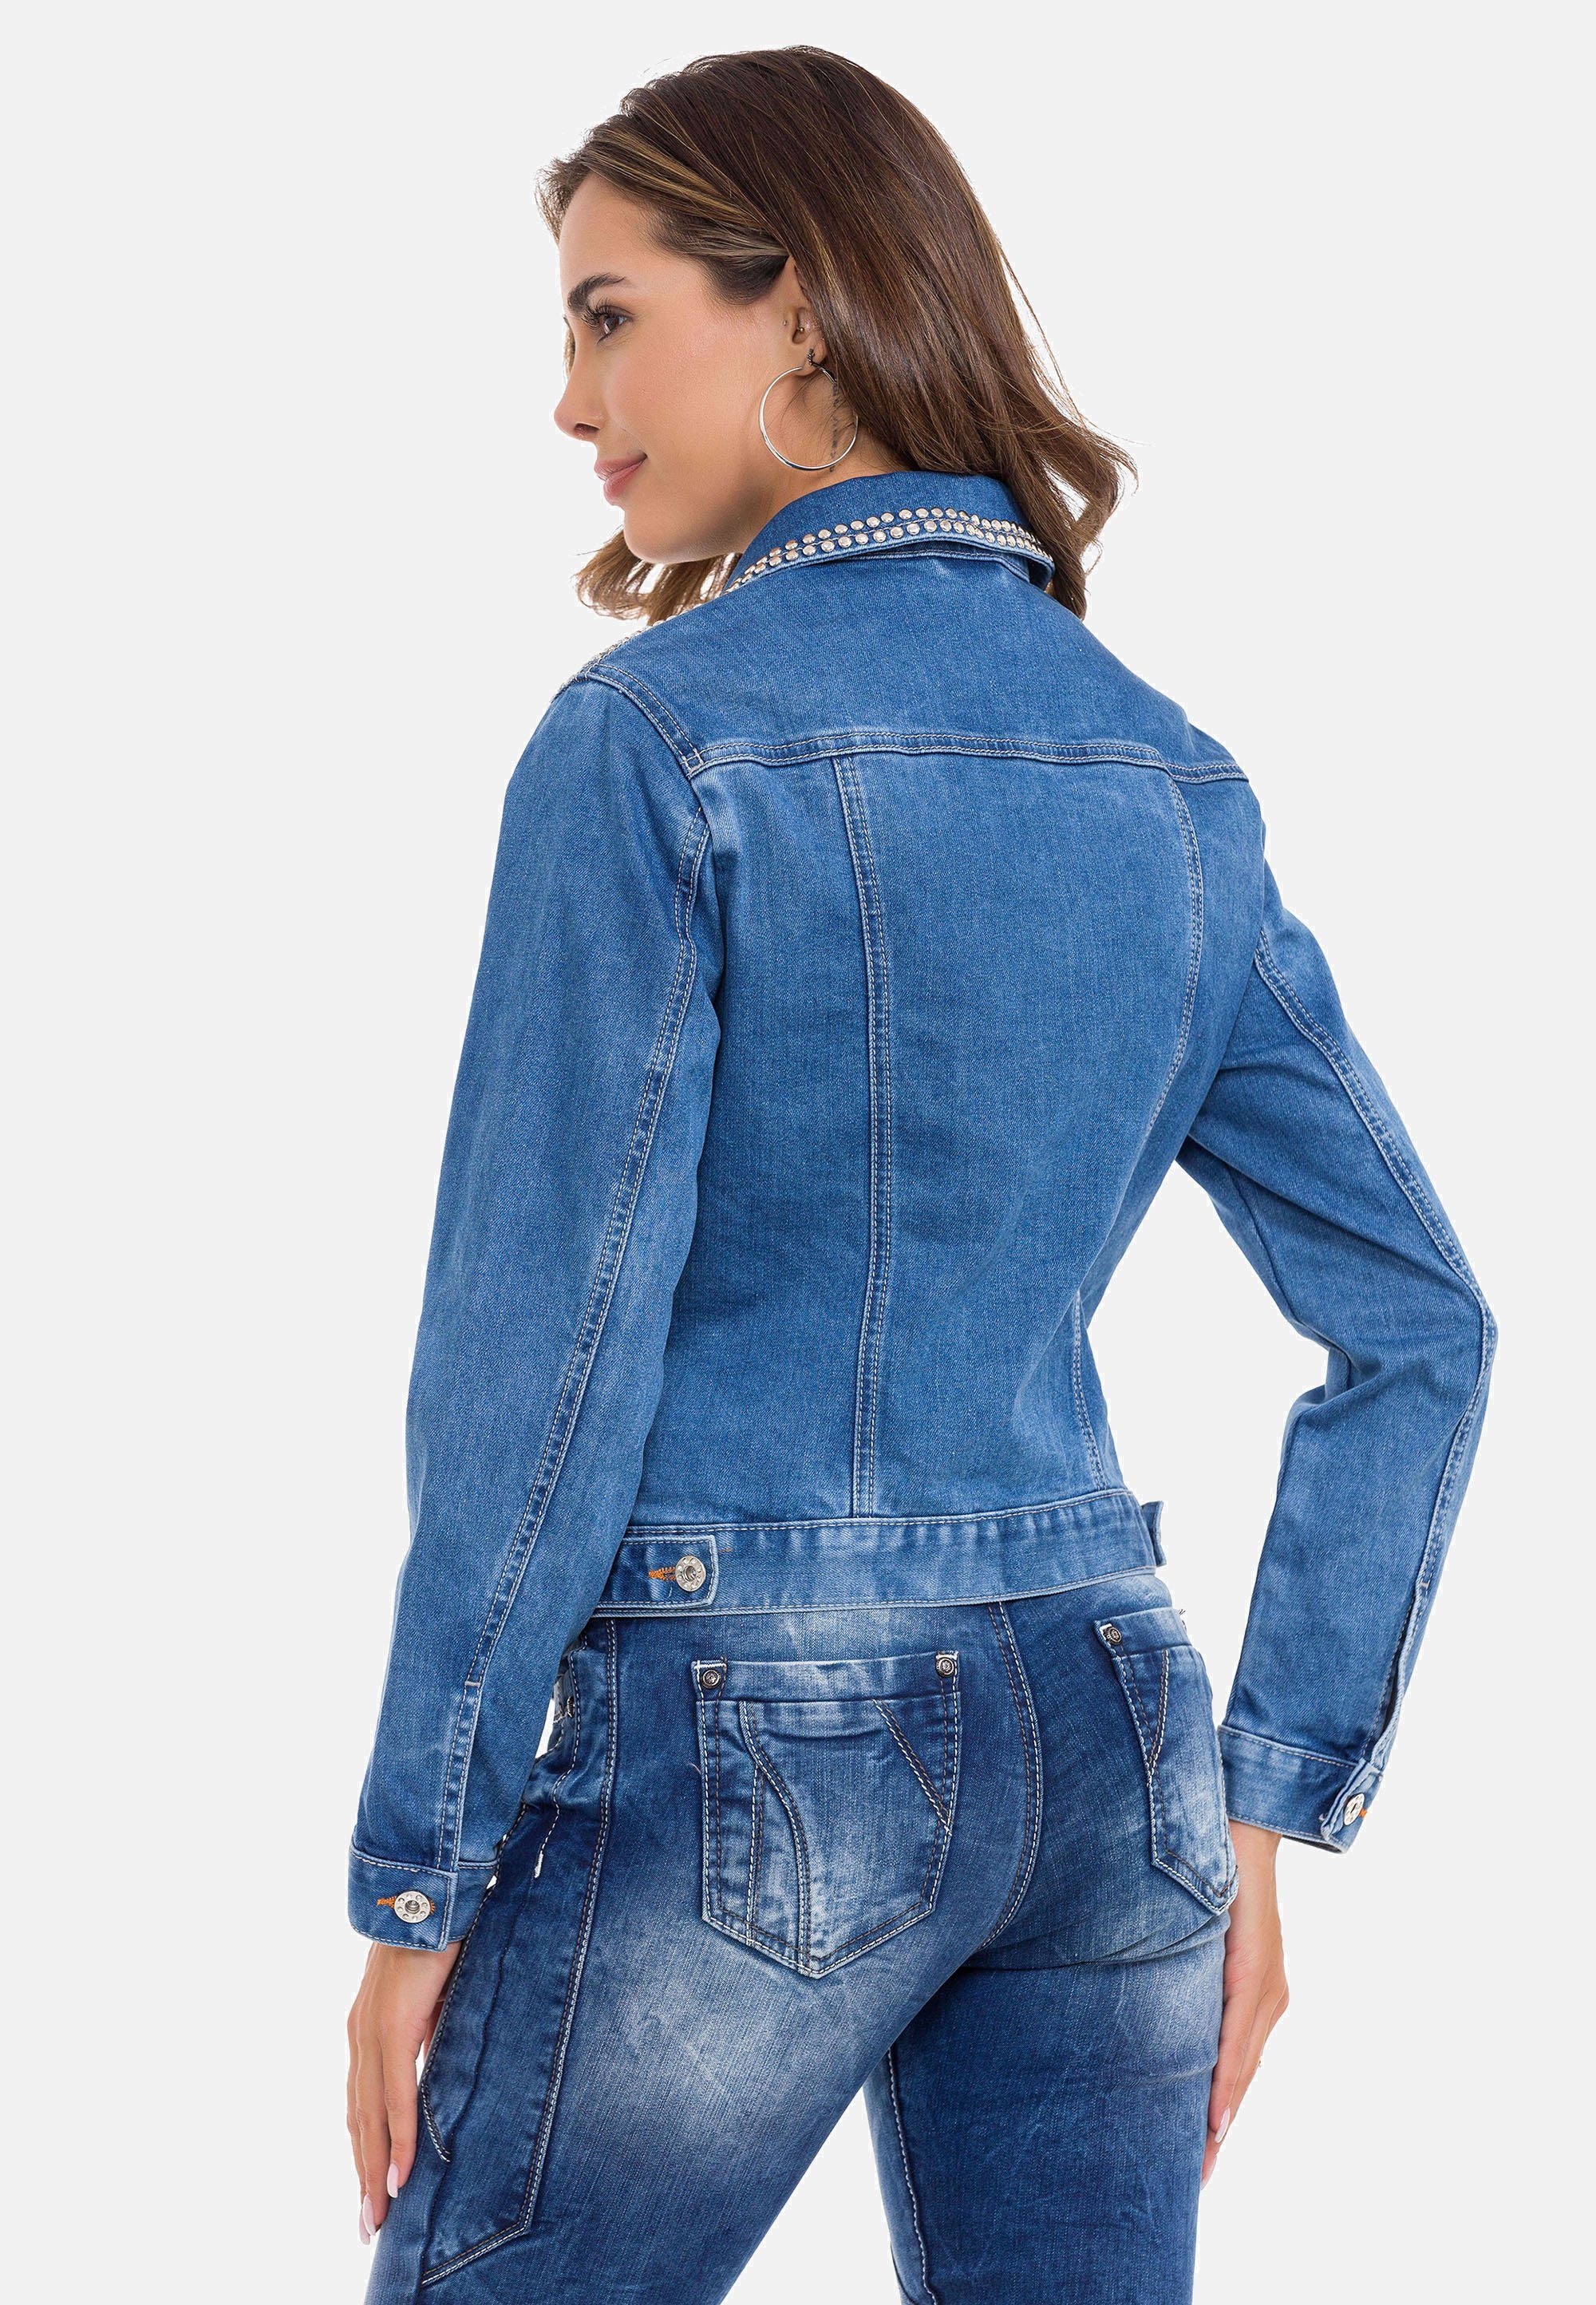 Cipo & Baxx Jeansjacke Nieten-Details blau modernen mit